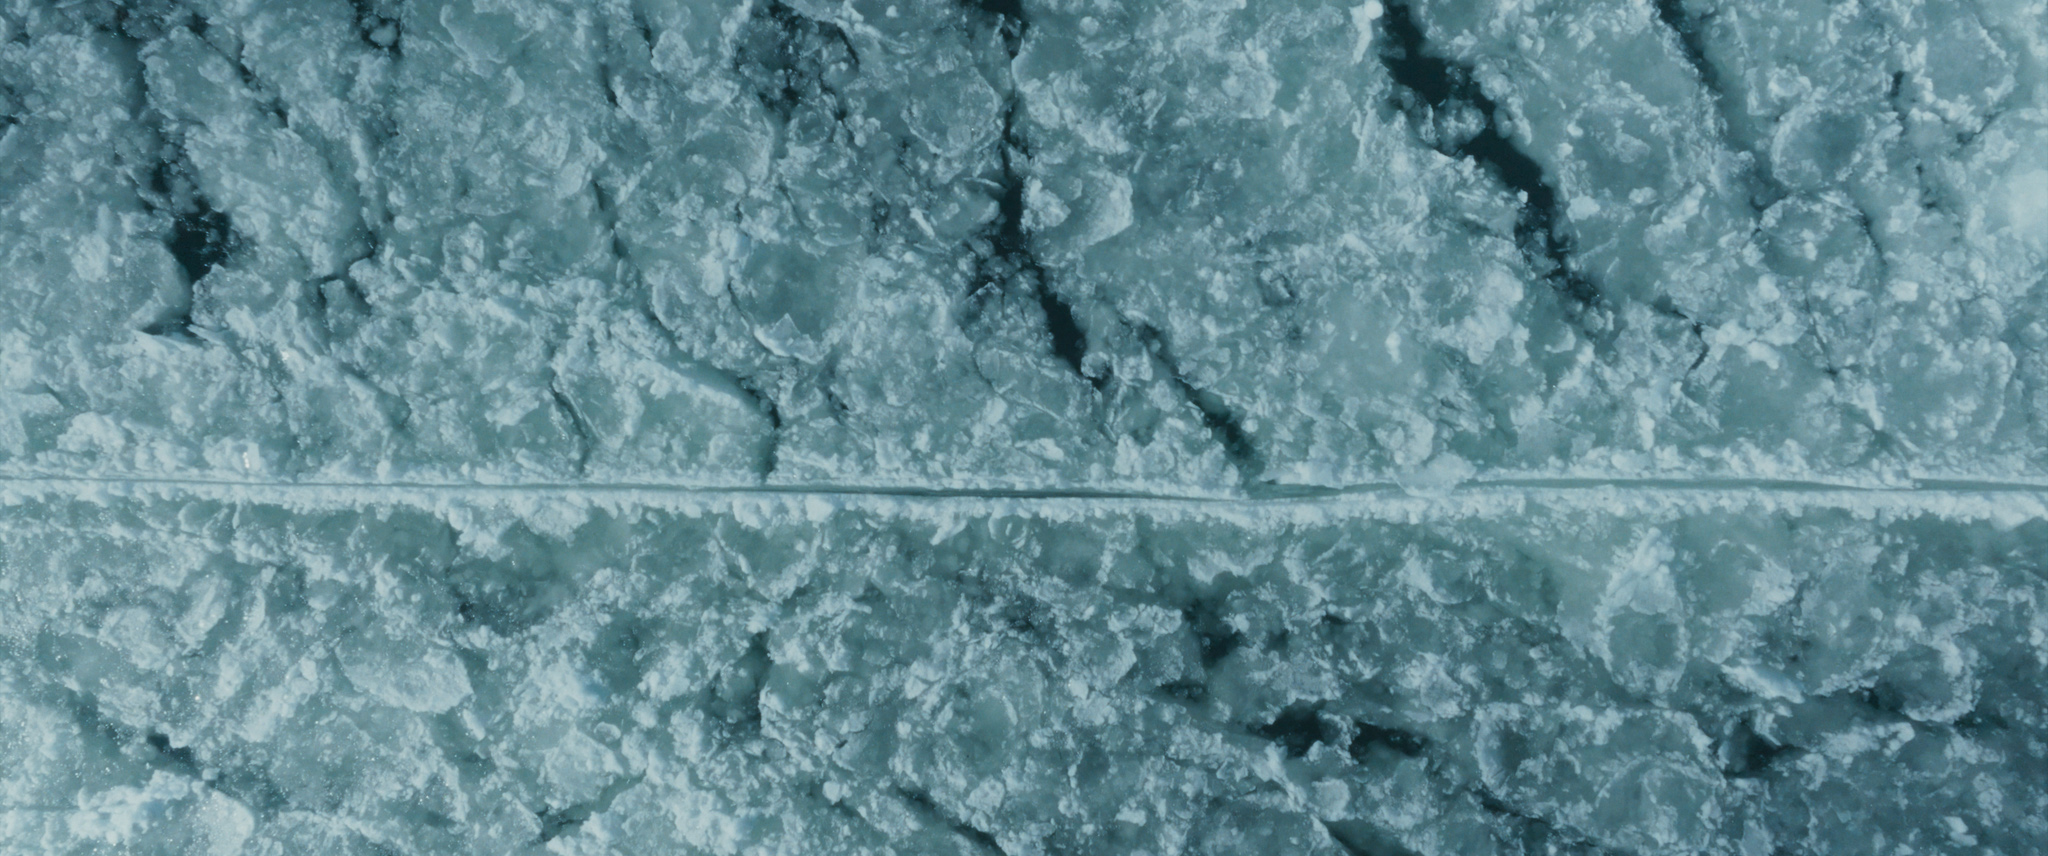 La fonte des glaces - Perito Moreno